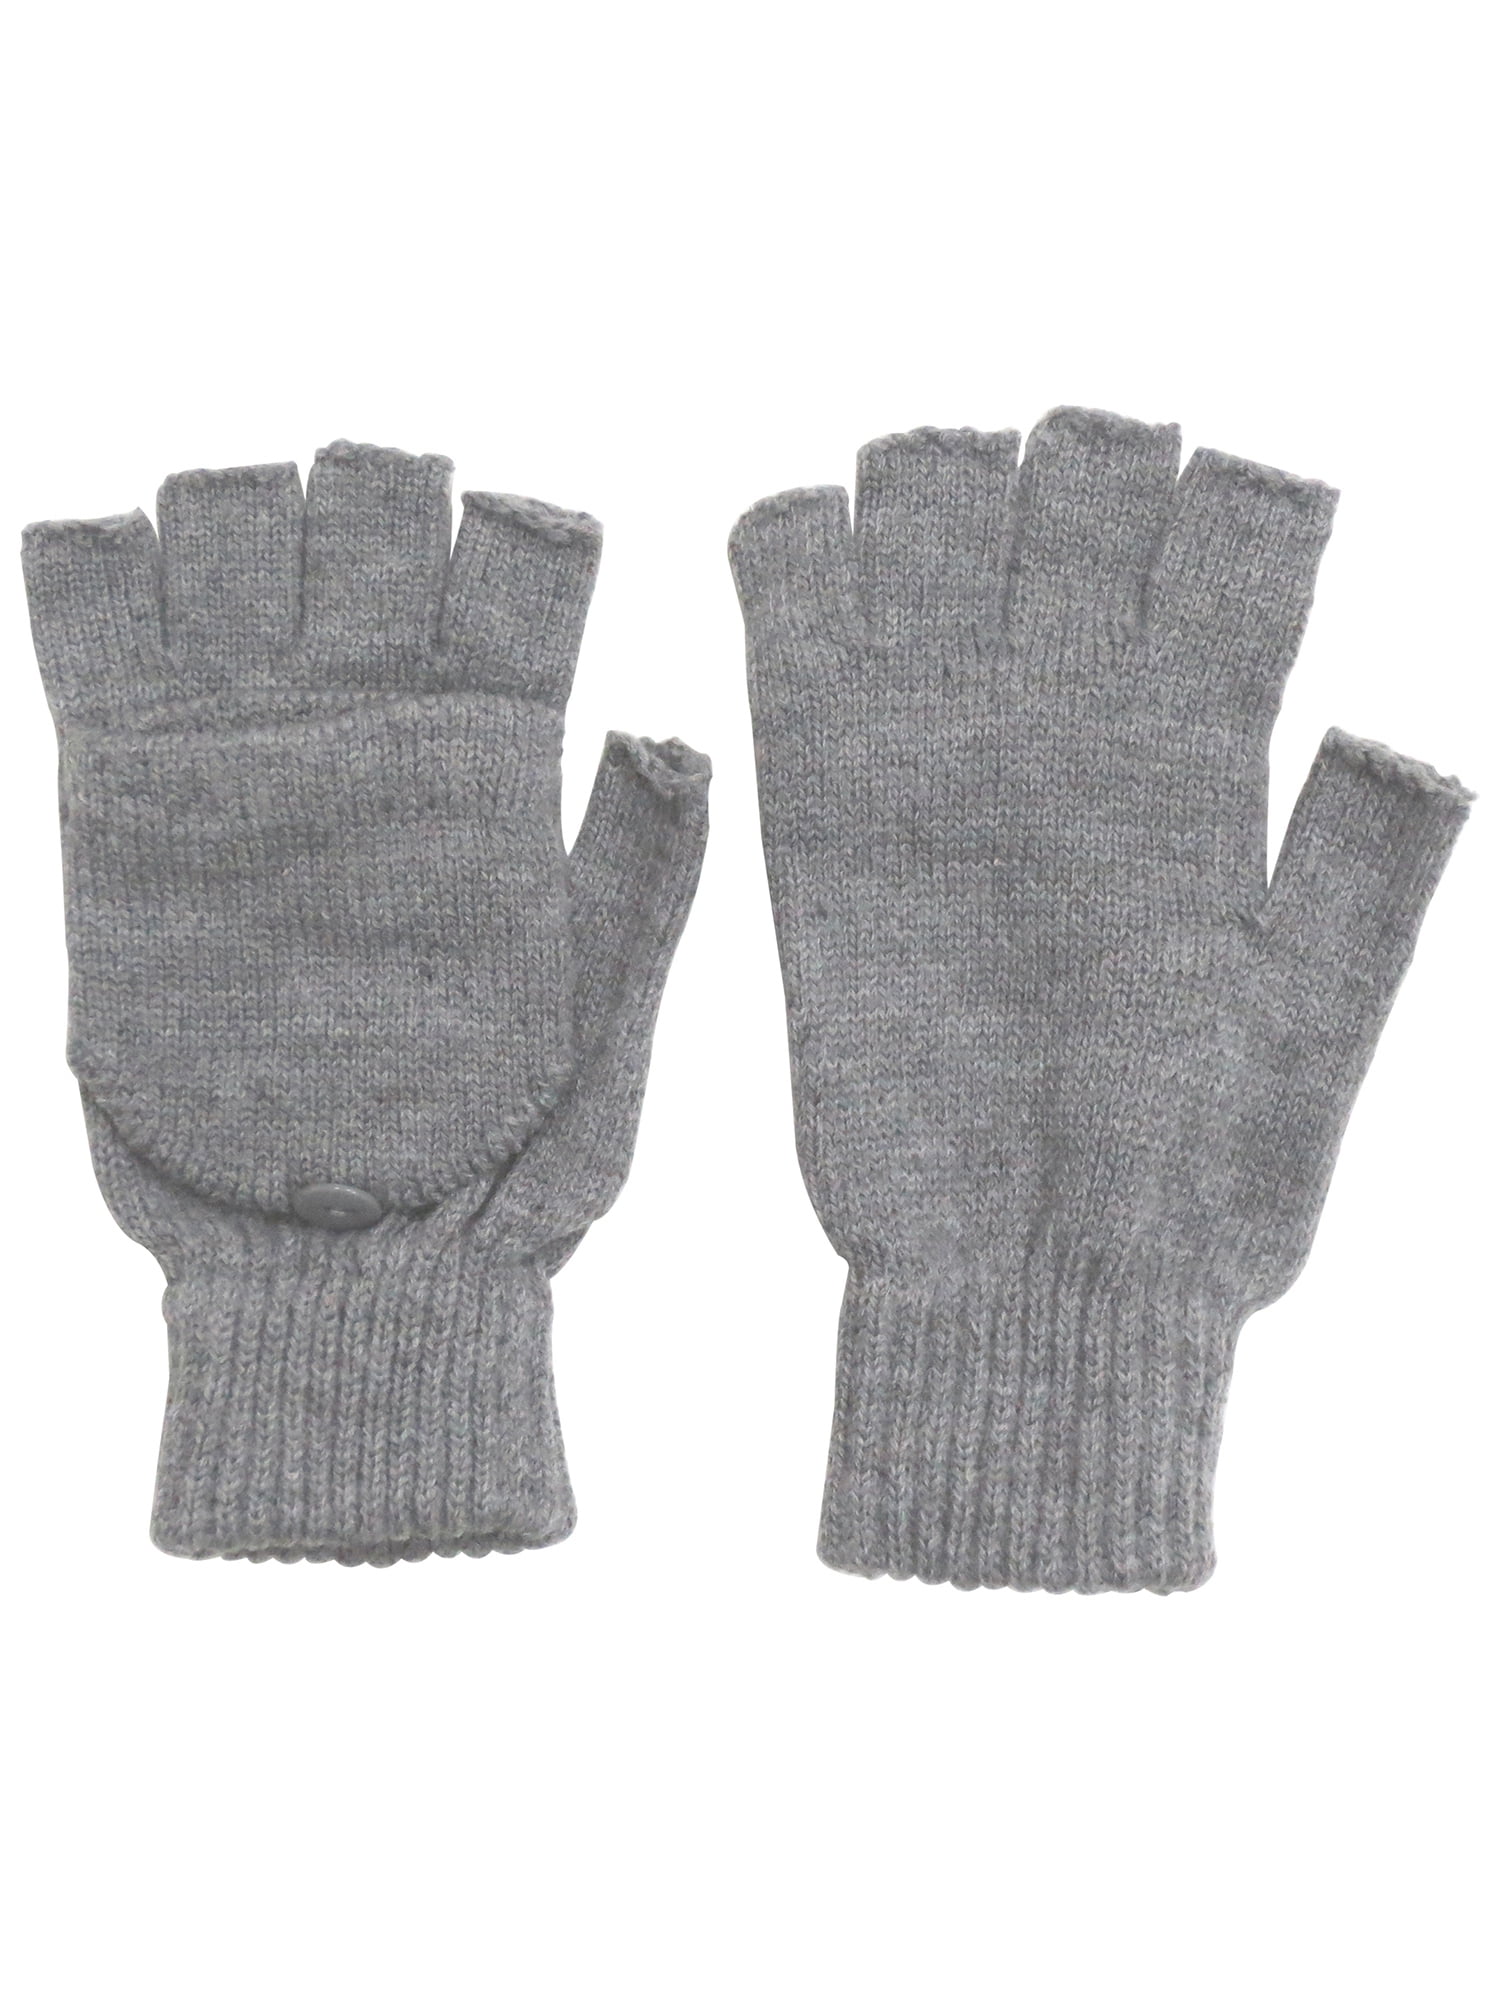 Unisex Ski Snow Skate Convertible Fingerless Fold-Over Half Gloves ...